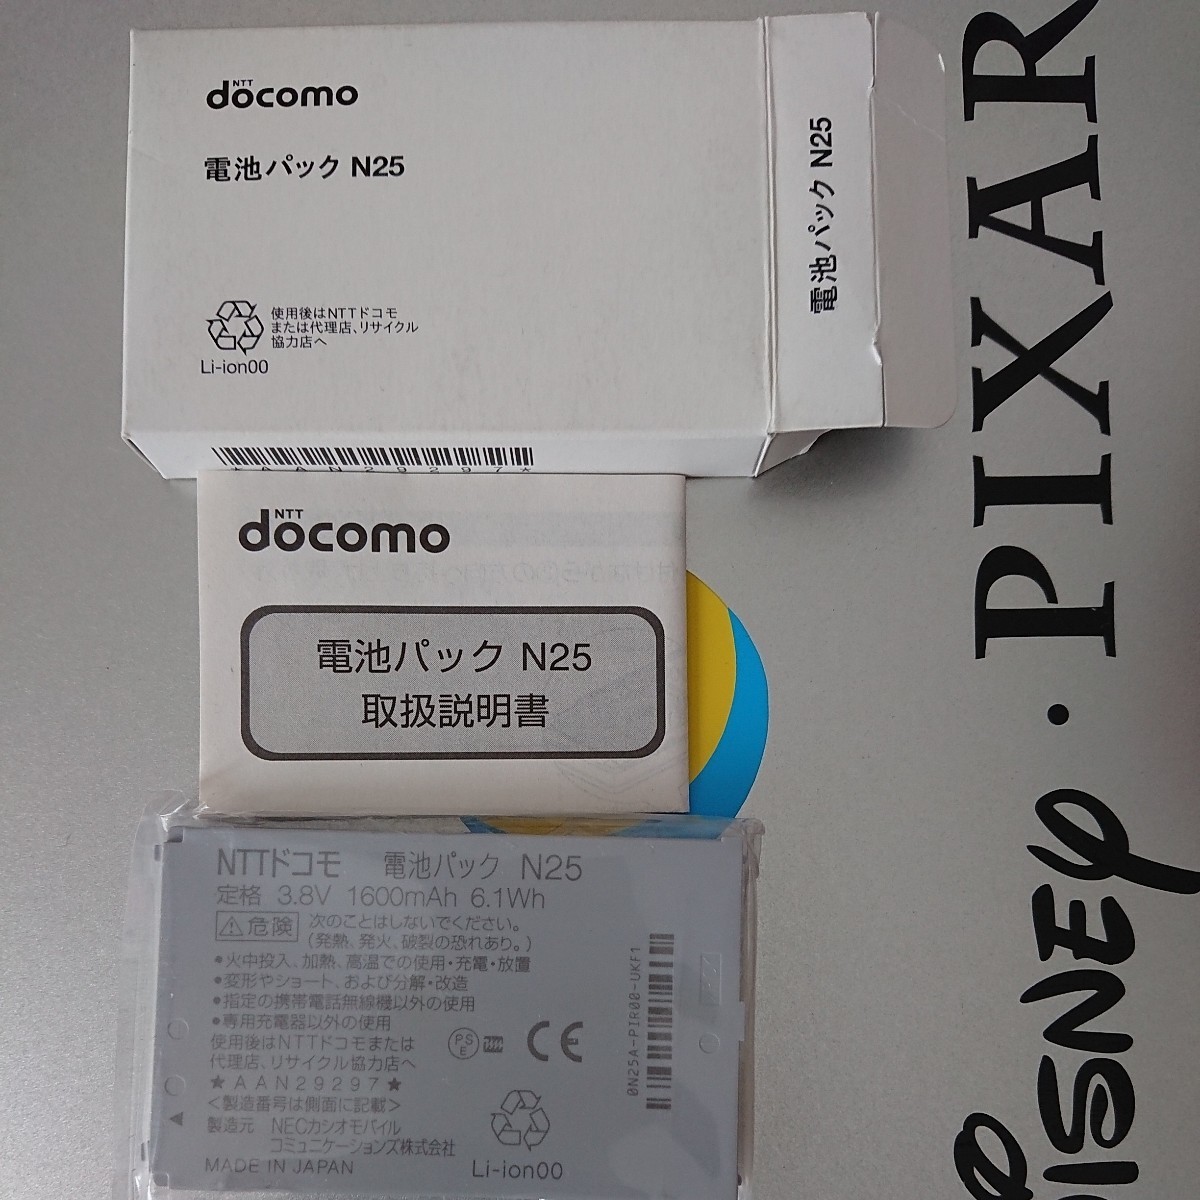 新品未使用電池パックN25 docomo ドコモ純正品日本代购,买对网